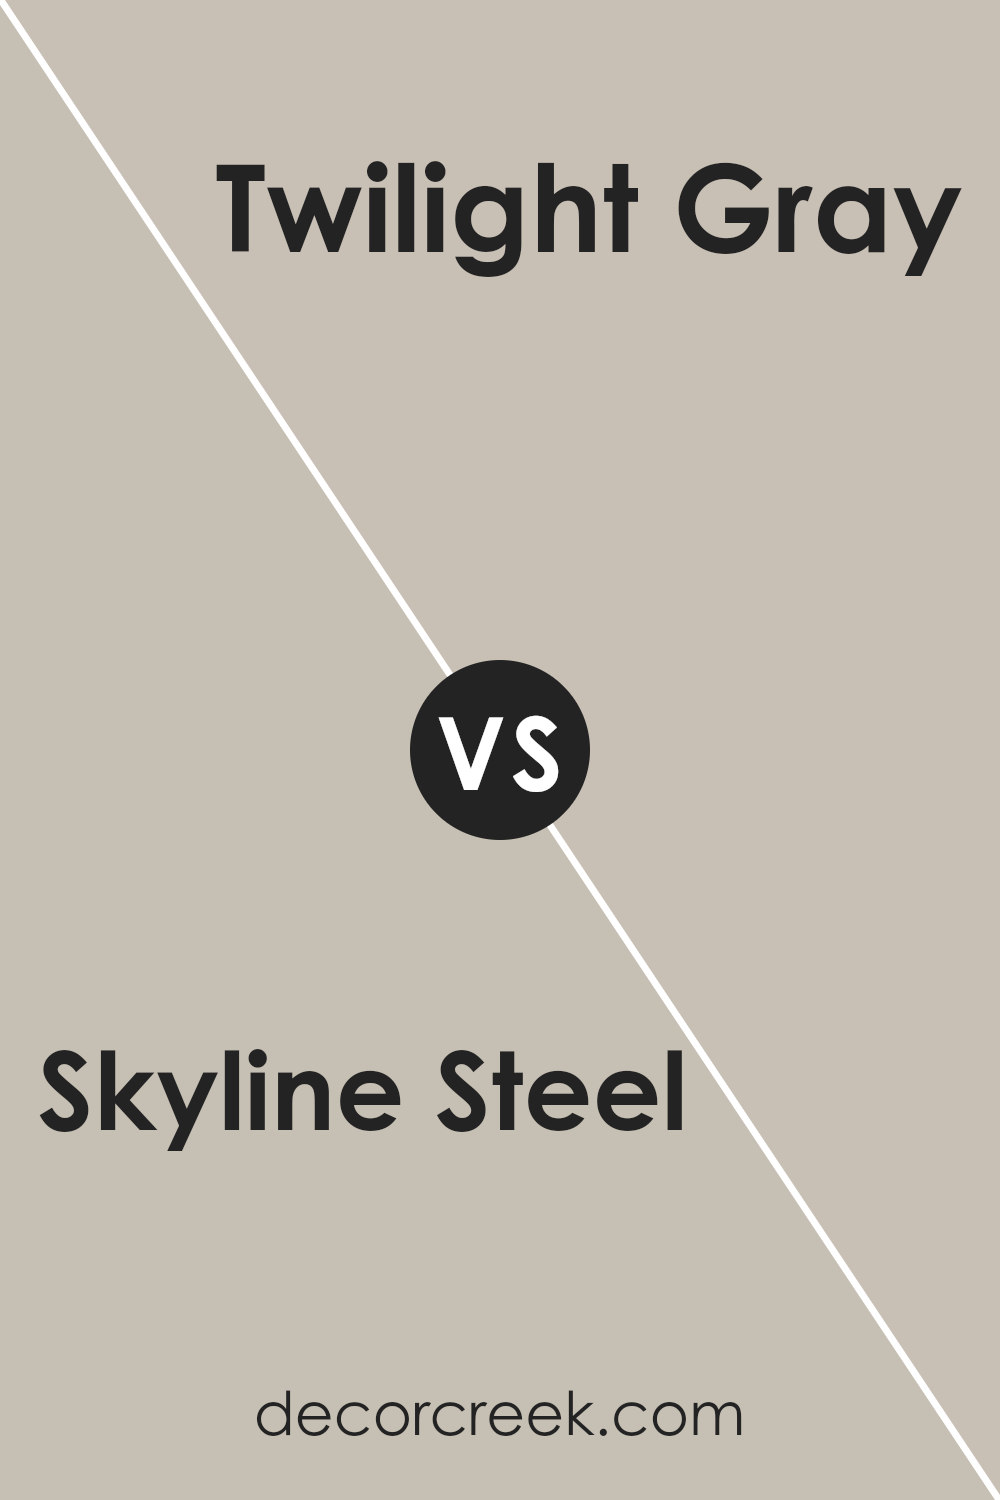 skyline_steel_sw_1015_vs_twilight_gray_sw_0054